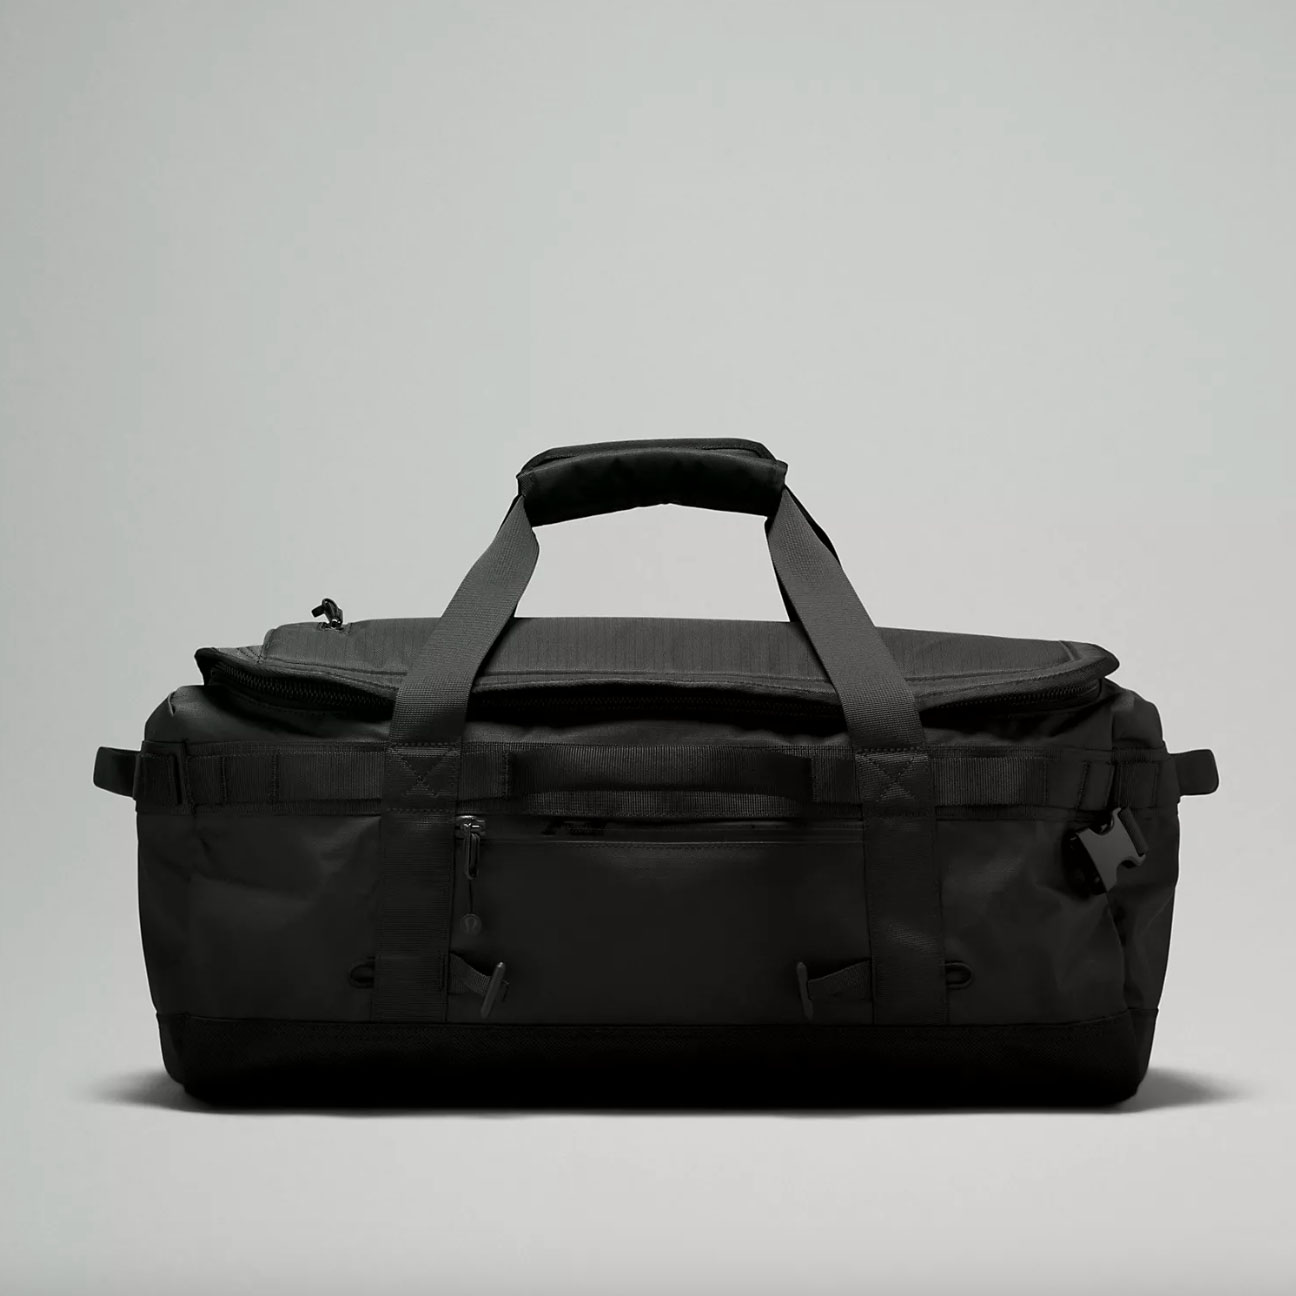 Black duffle backpack